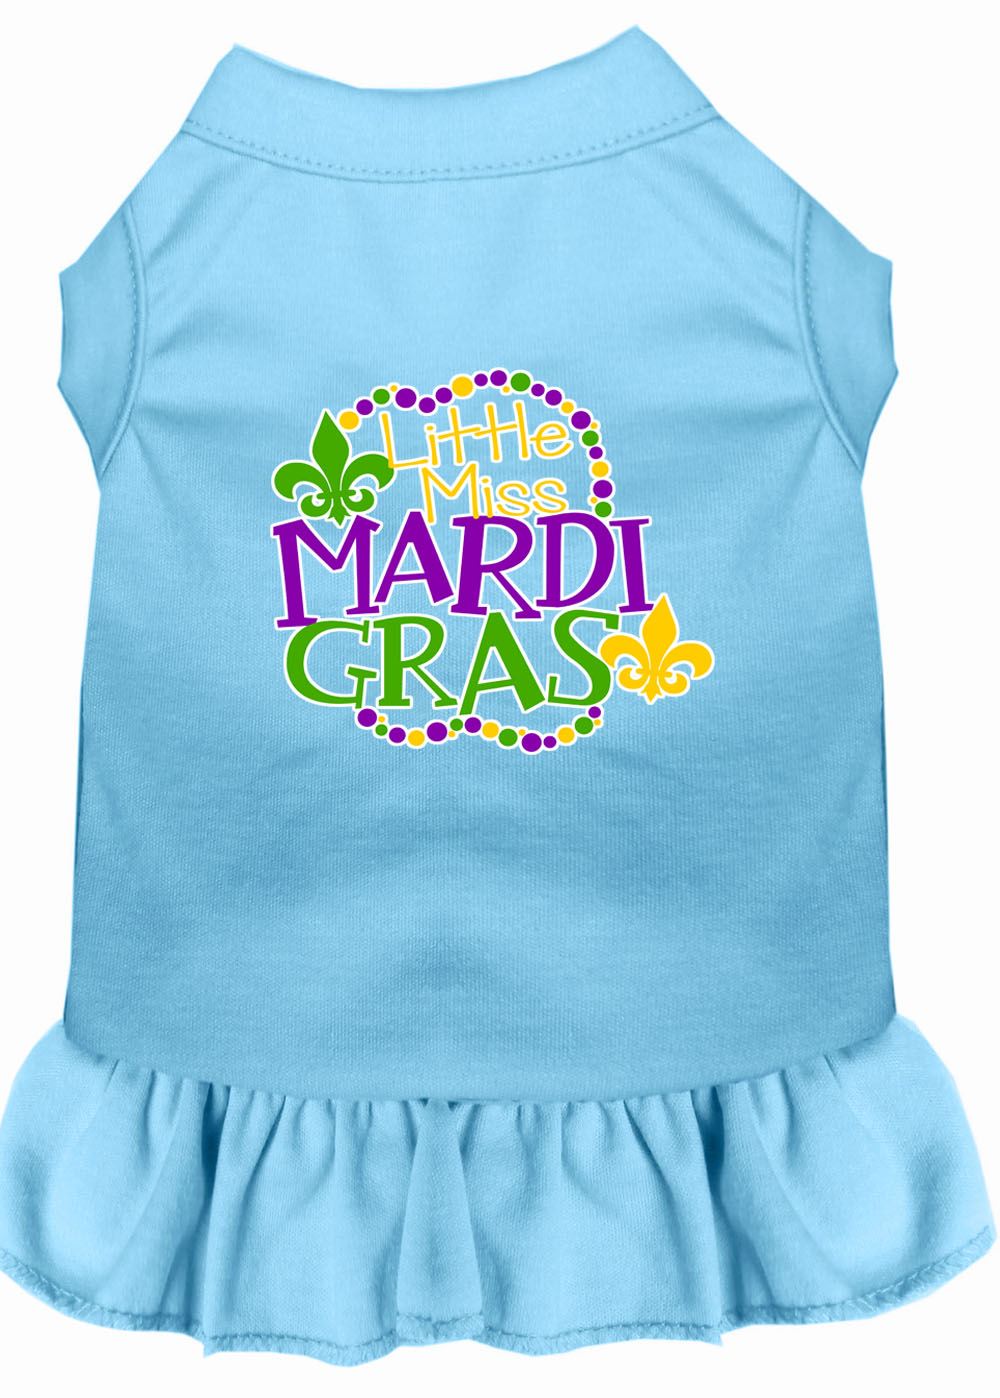 Miss Mardi Gras Screen Print Mardi Gras Dog Dress Baby Blue XL